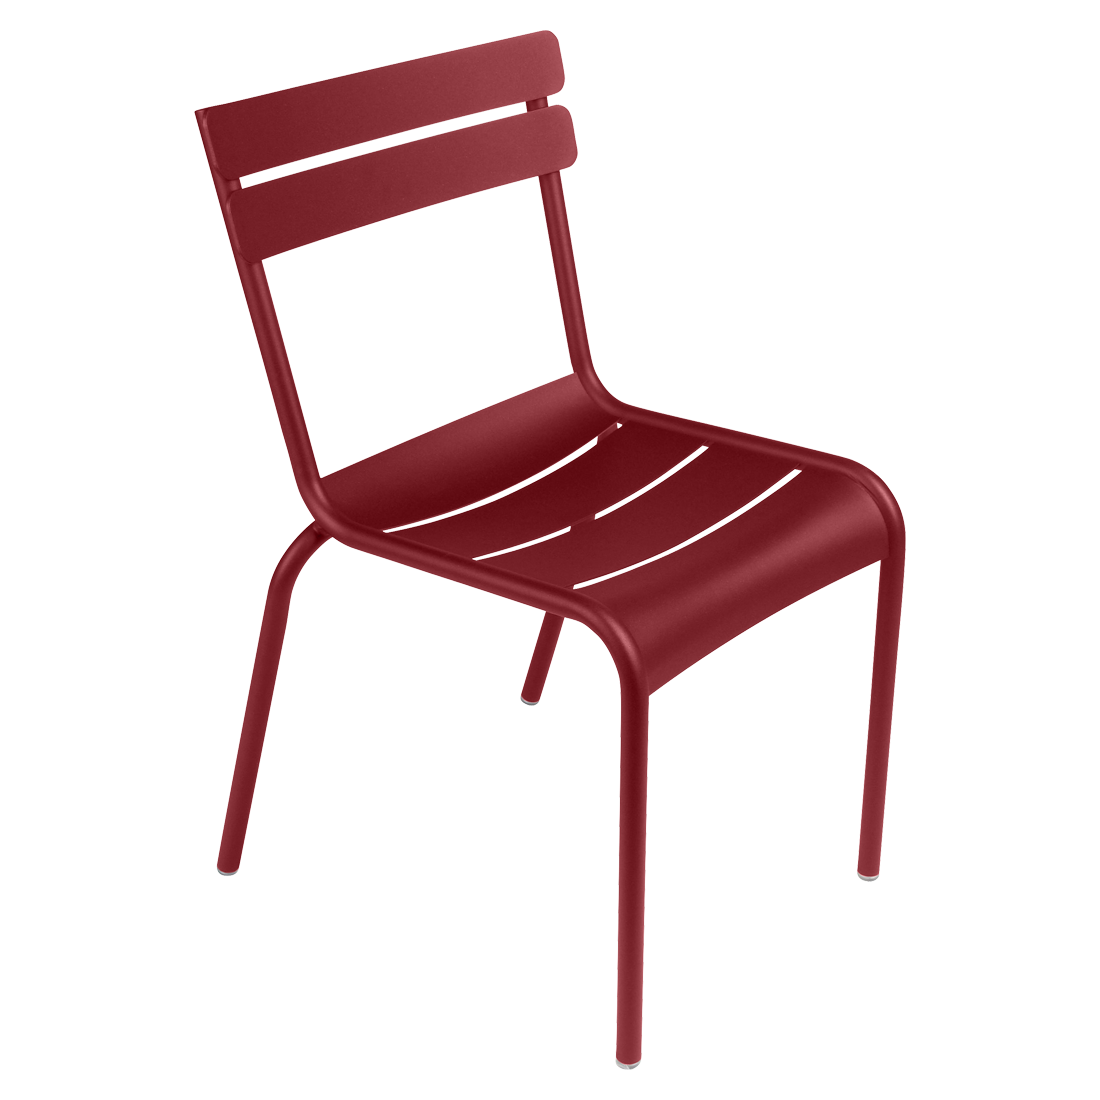 Chaise Luxembourg, chaise de jardin métal